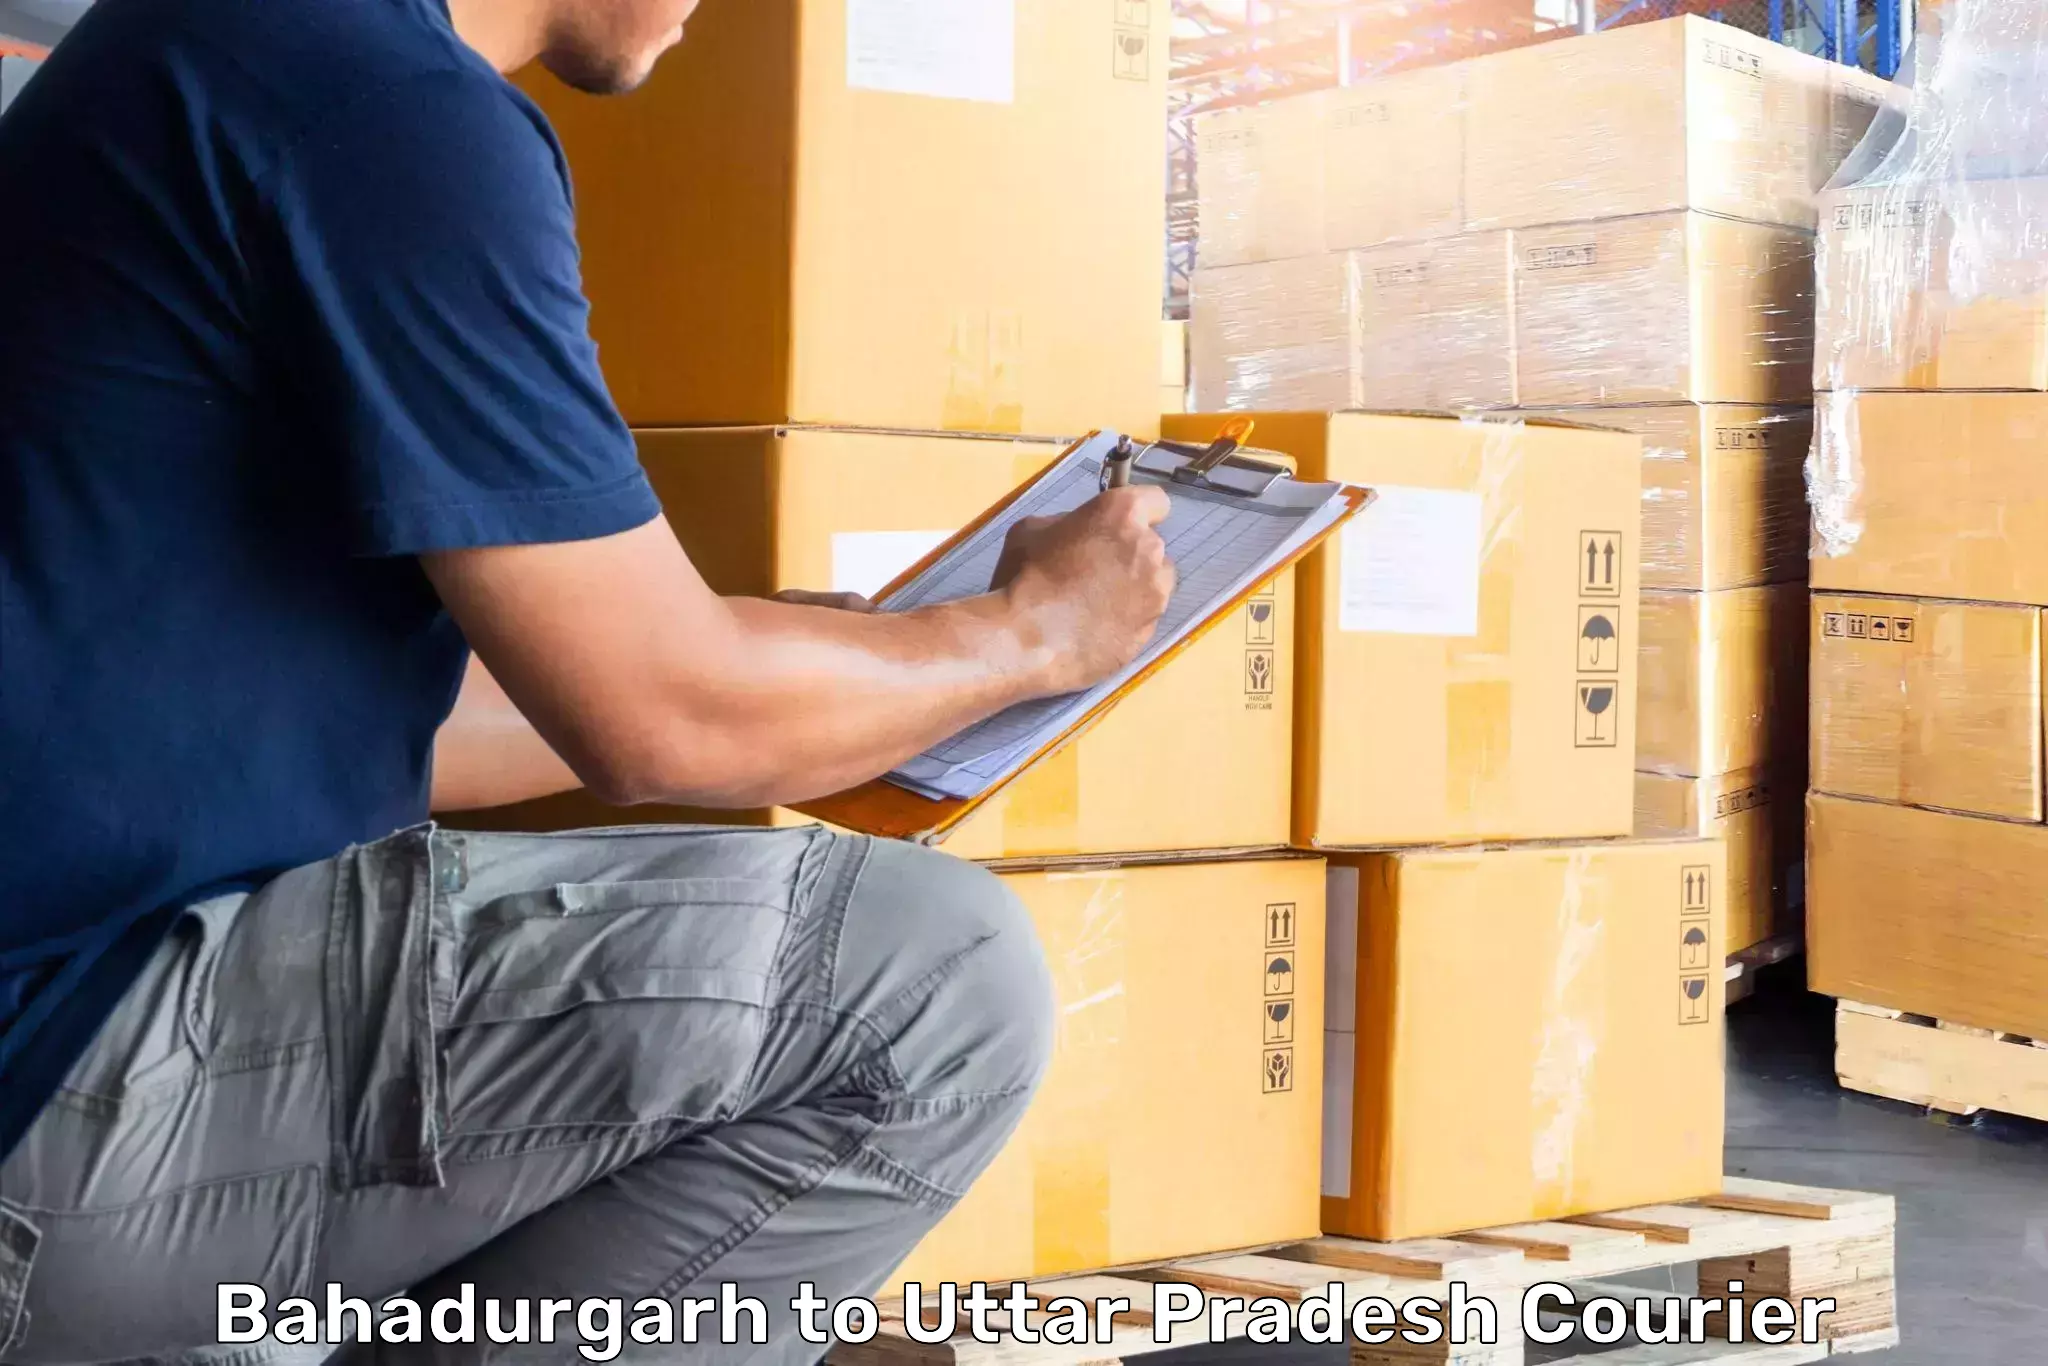 Luggage shipment processing Bahadurgarh to Gauri Bazar